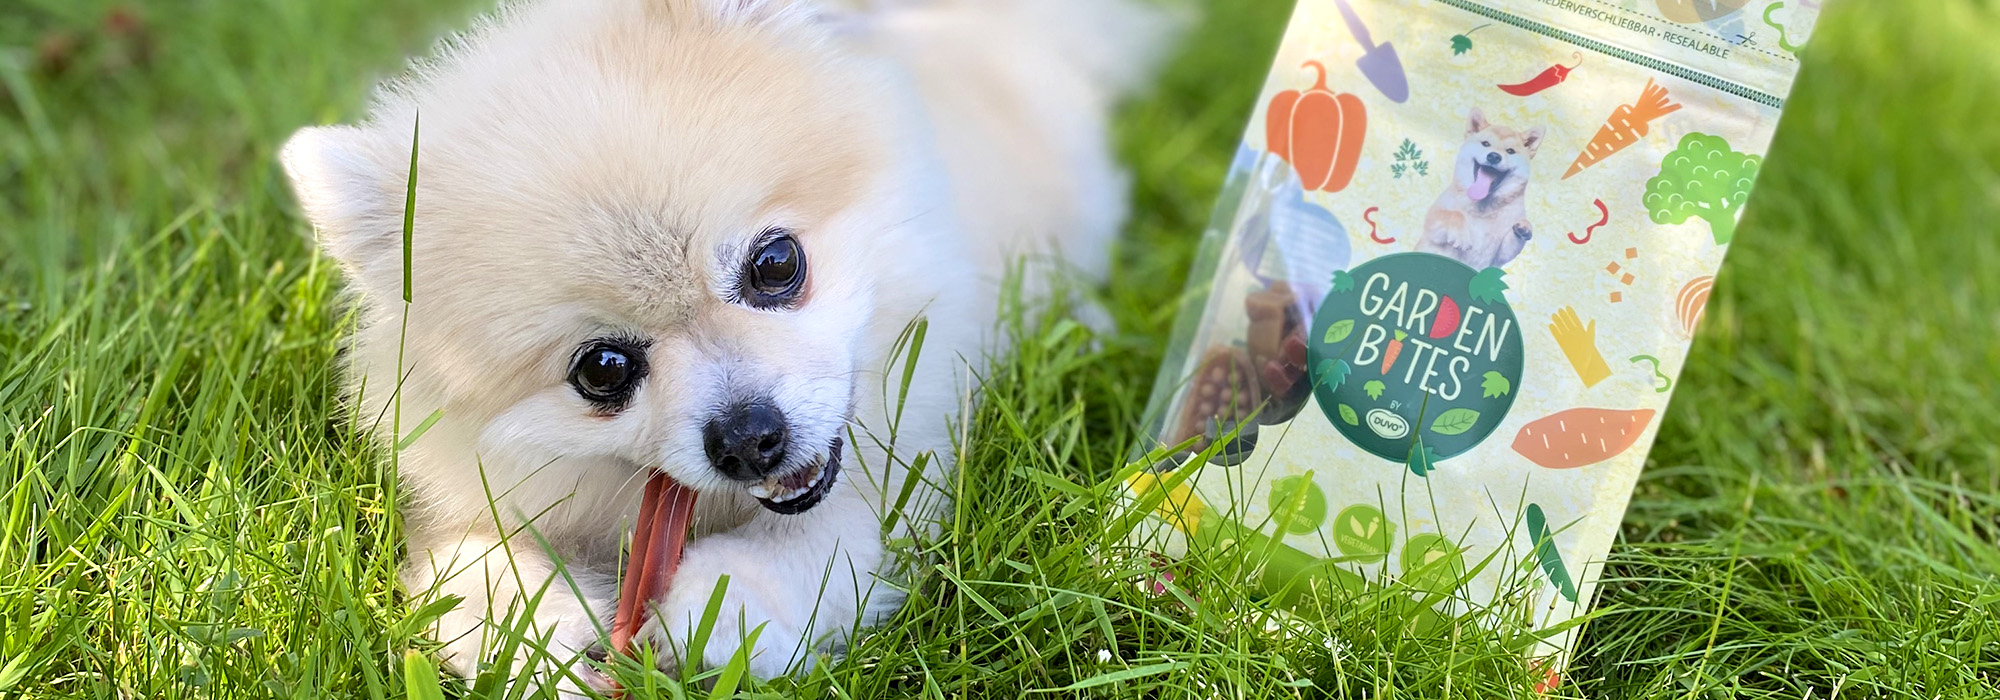 Ein Hund frisst einen vegetarischen Snack in einem Garten